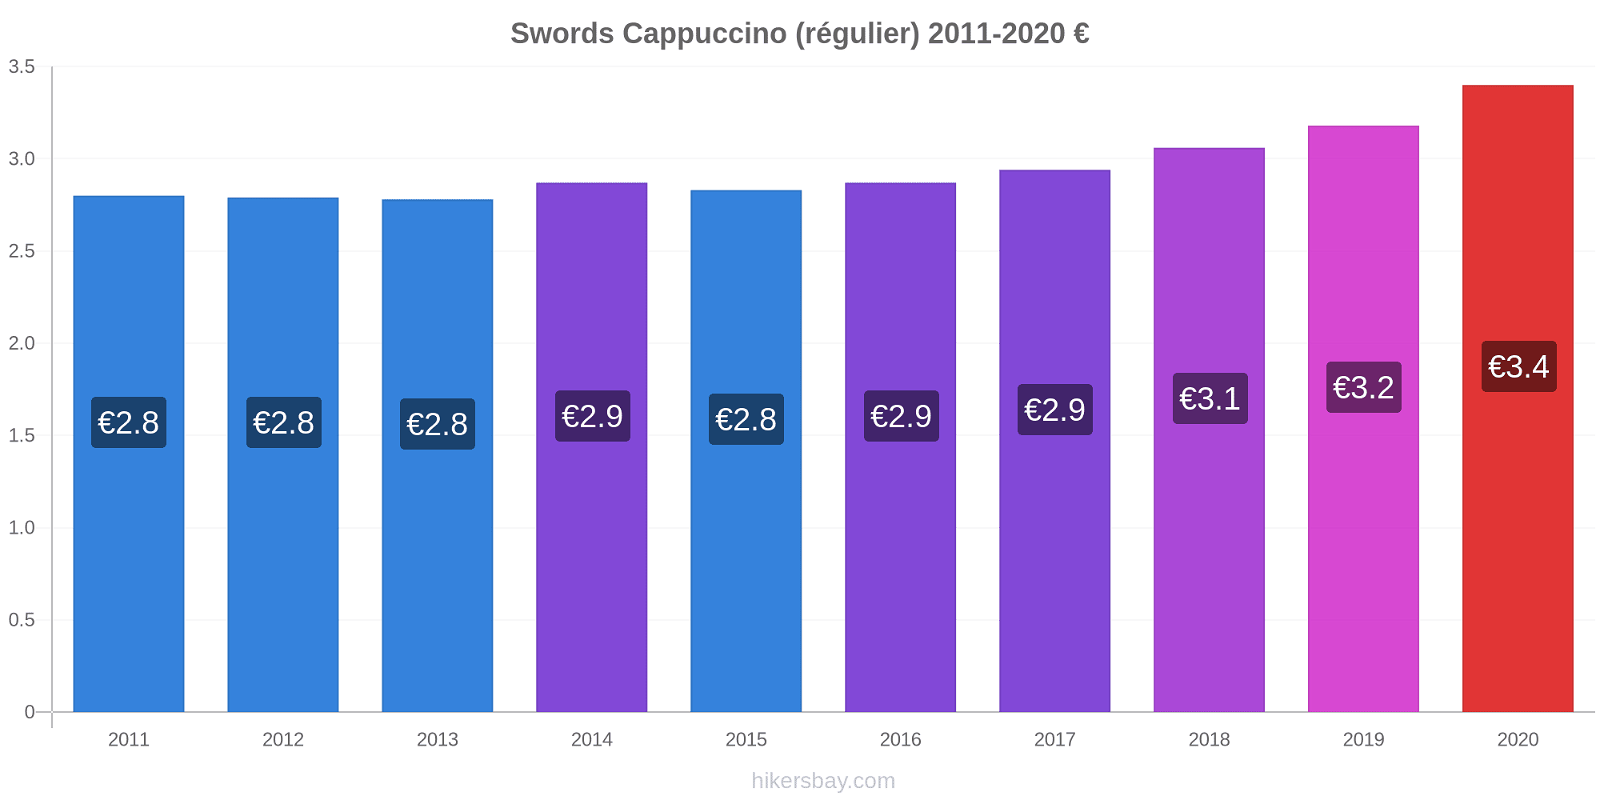 Swords changements de prix Cappuccino (régulier) hikersbay.com